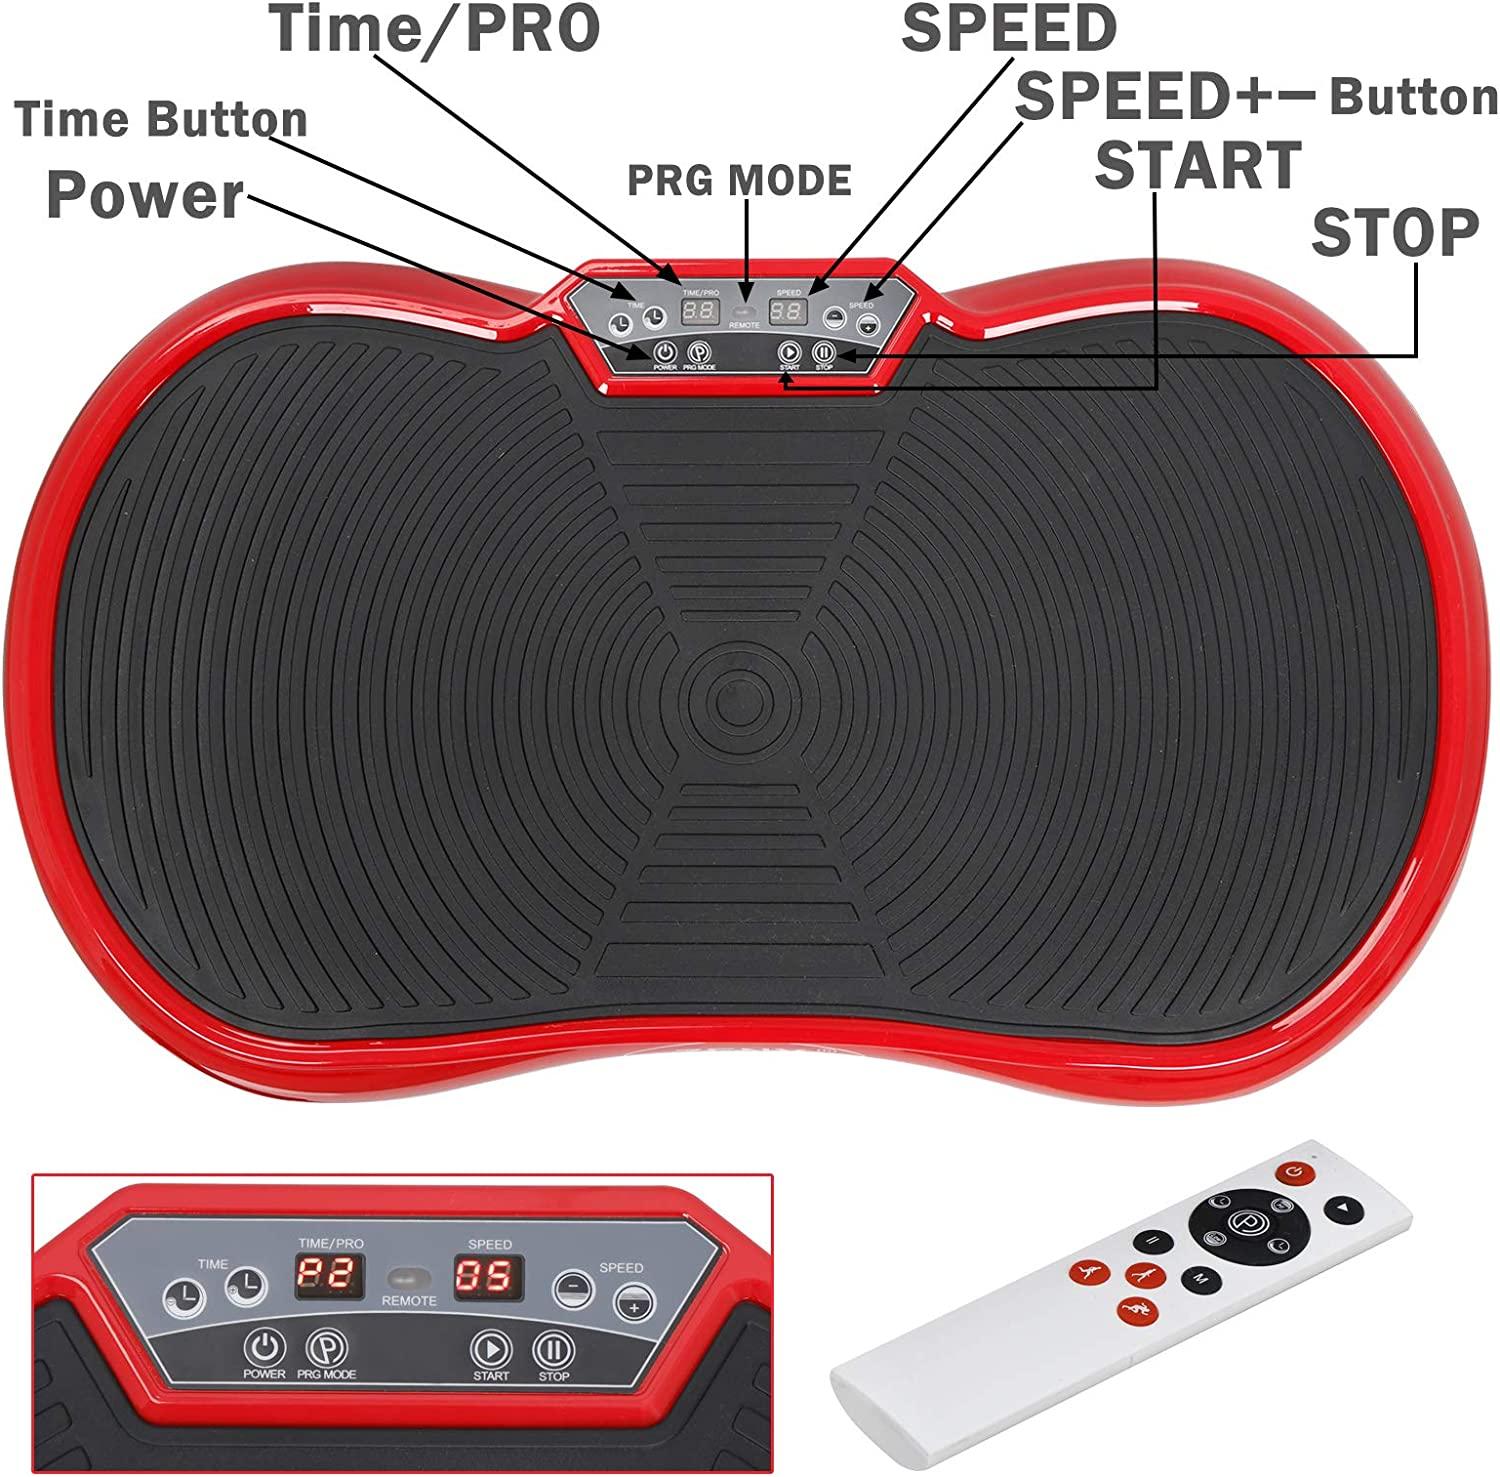  SUPER DEAL Pro Vibration Plate Exercise Machine